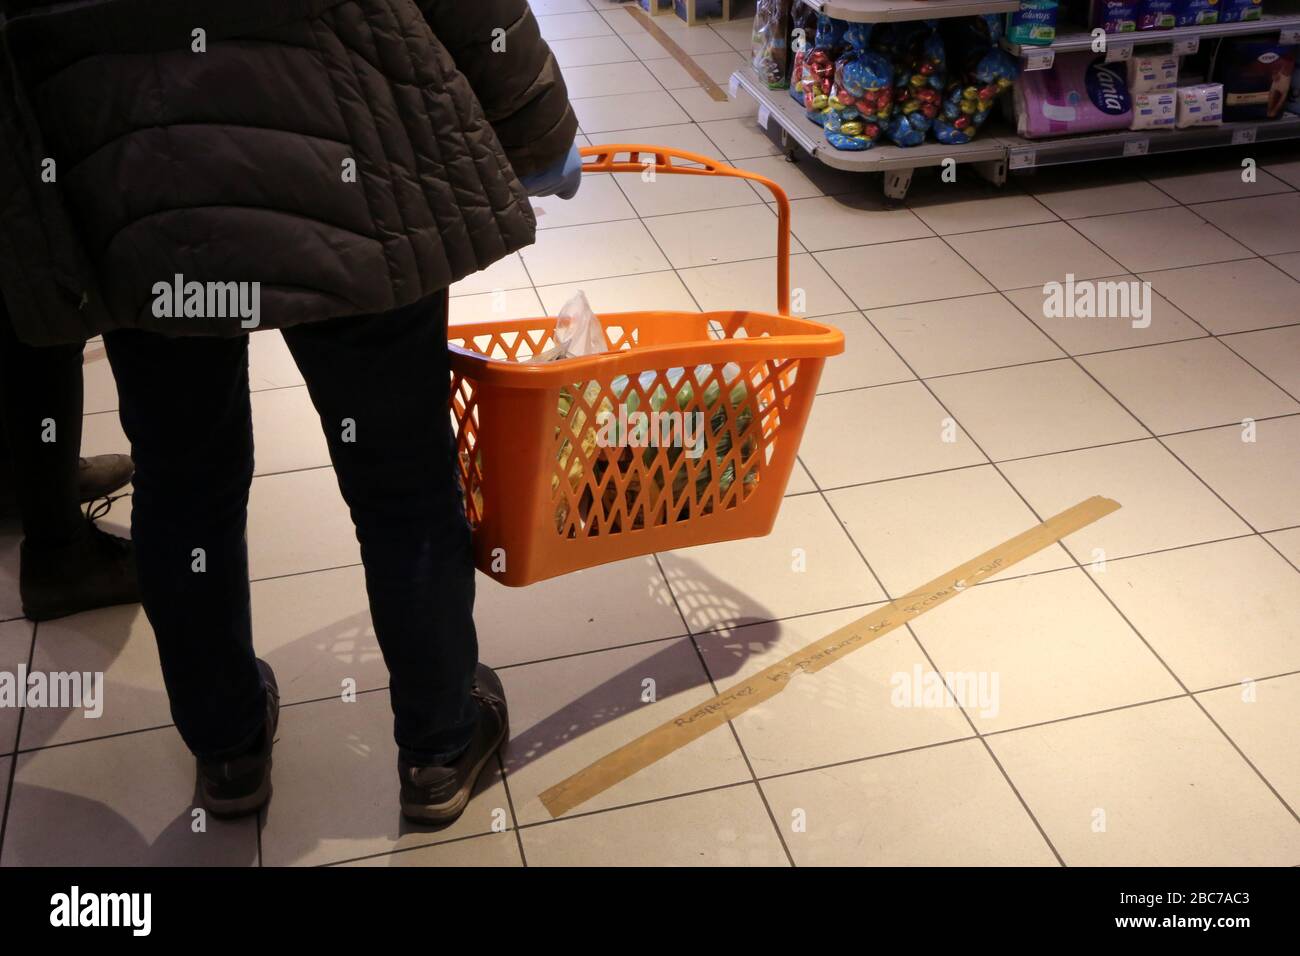 Distanciation. Respect des distances. Coronavirus. Covid-19. Supermarché. Saint-Gervais-les-Bains. Haute-Savoie. France. Stock Photo